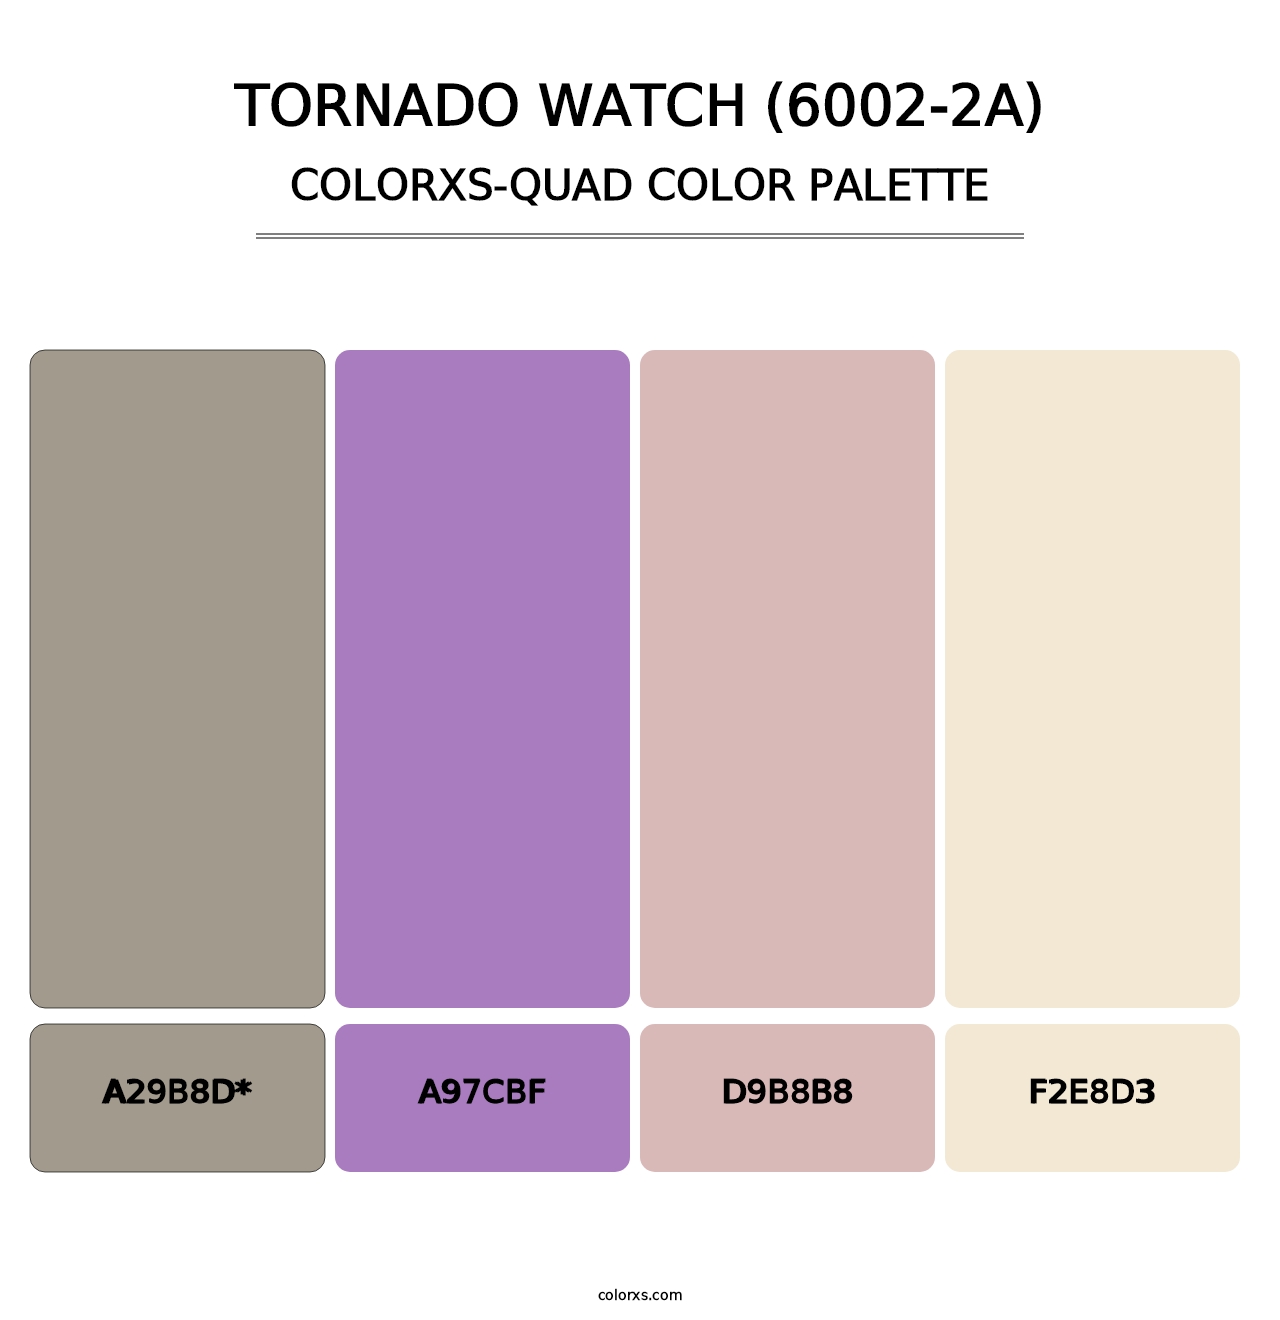 Tornado Watch (6002-2A) - Colorxs Quad Palette